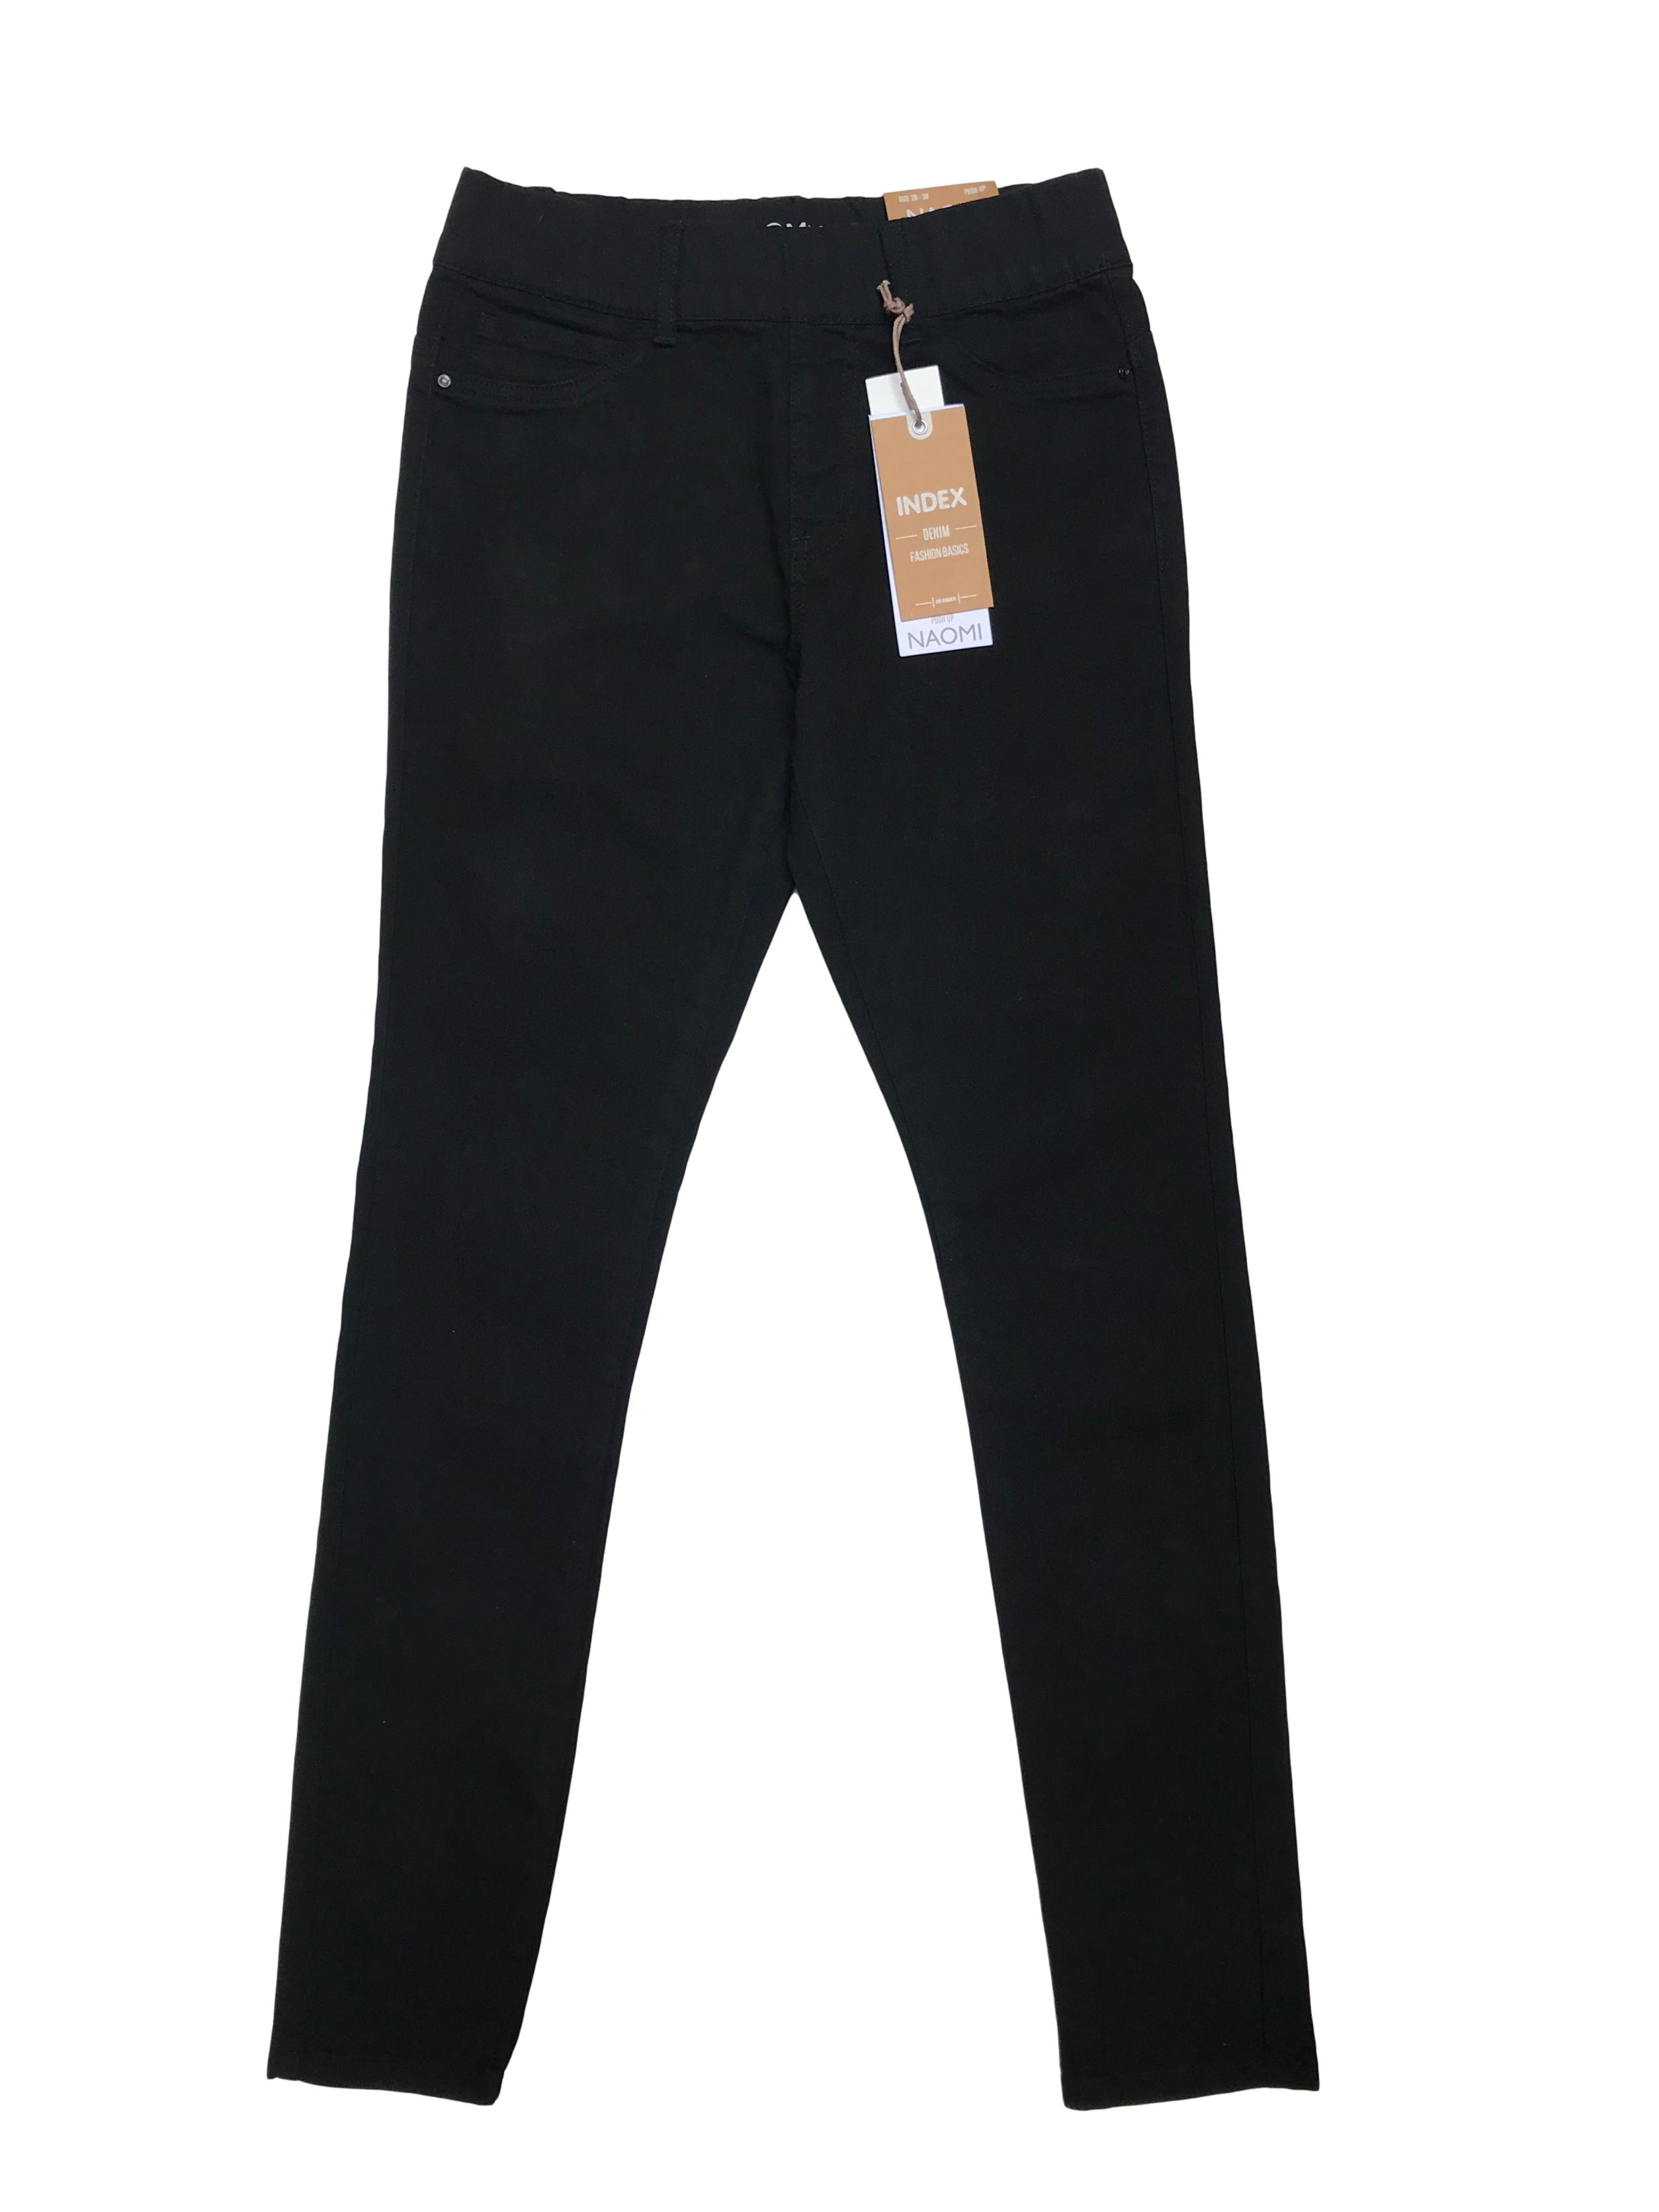 Jegging Index negra ligeramente stretch con elástico en la cintura. Pretina 72cm (sin estirar). Nueva con etiqueta, precio origina S/ 69.95